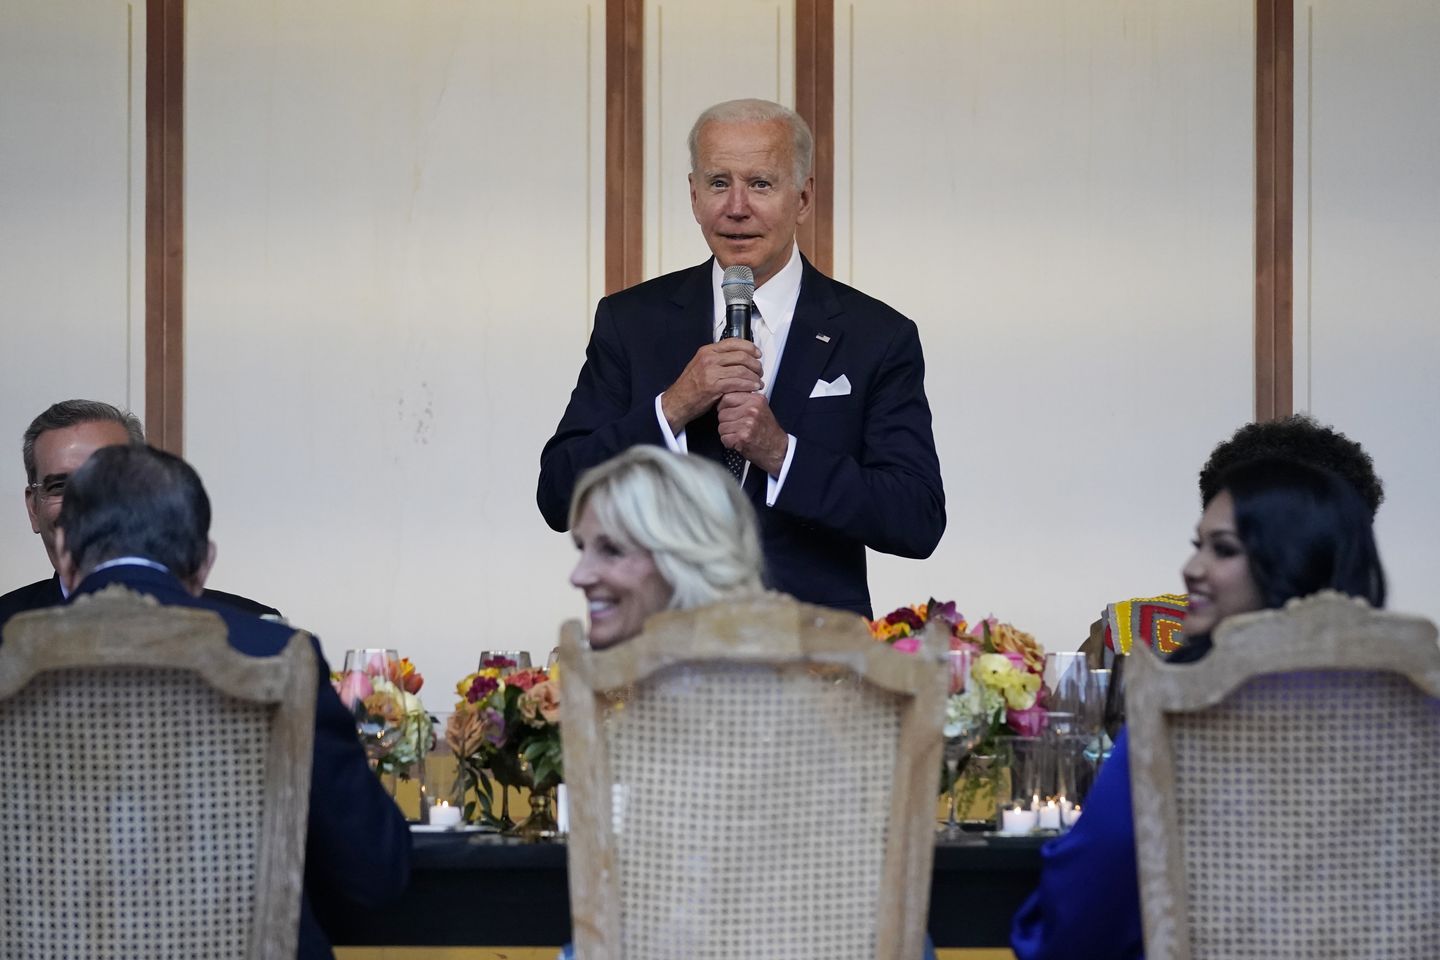 Joe Biden, Jill Biden mengatakan mereka telah menentang prognostikator politik